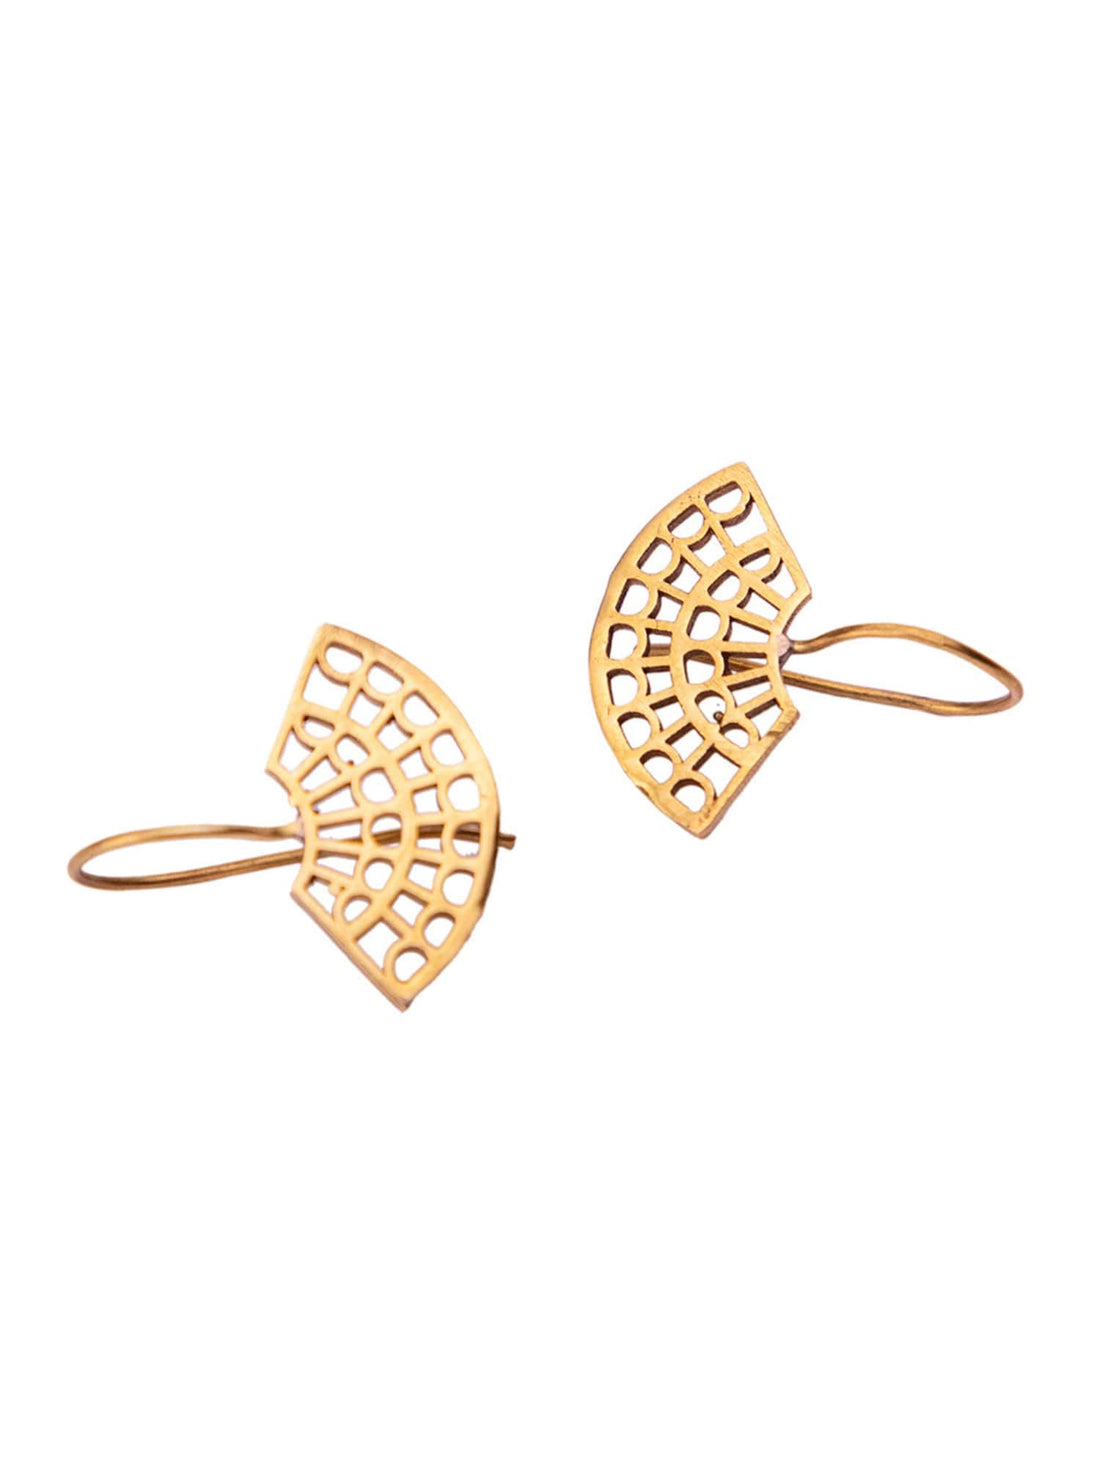 Work Wear Drops and Danglers Earrings - Western Gold-Plated Brass Earrings By Studio One Love